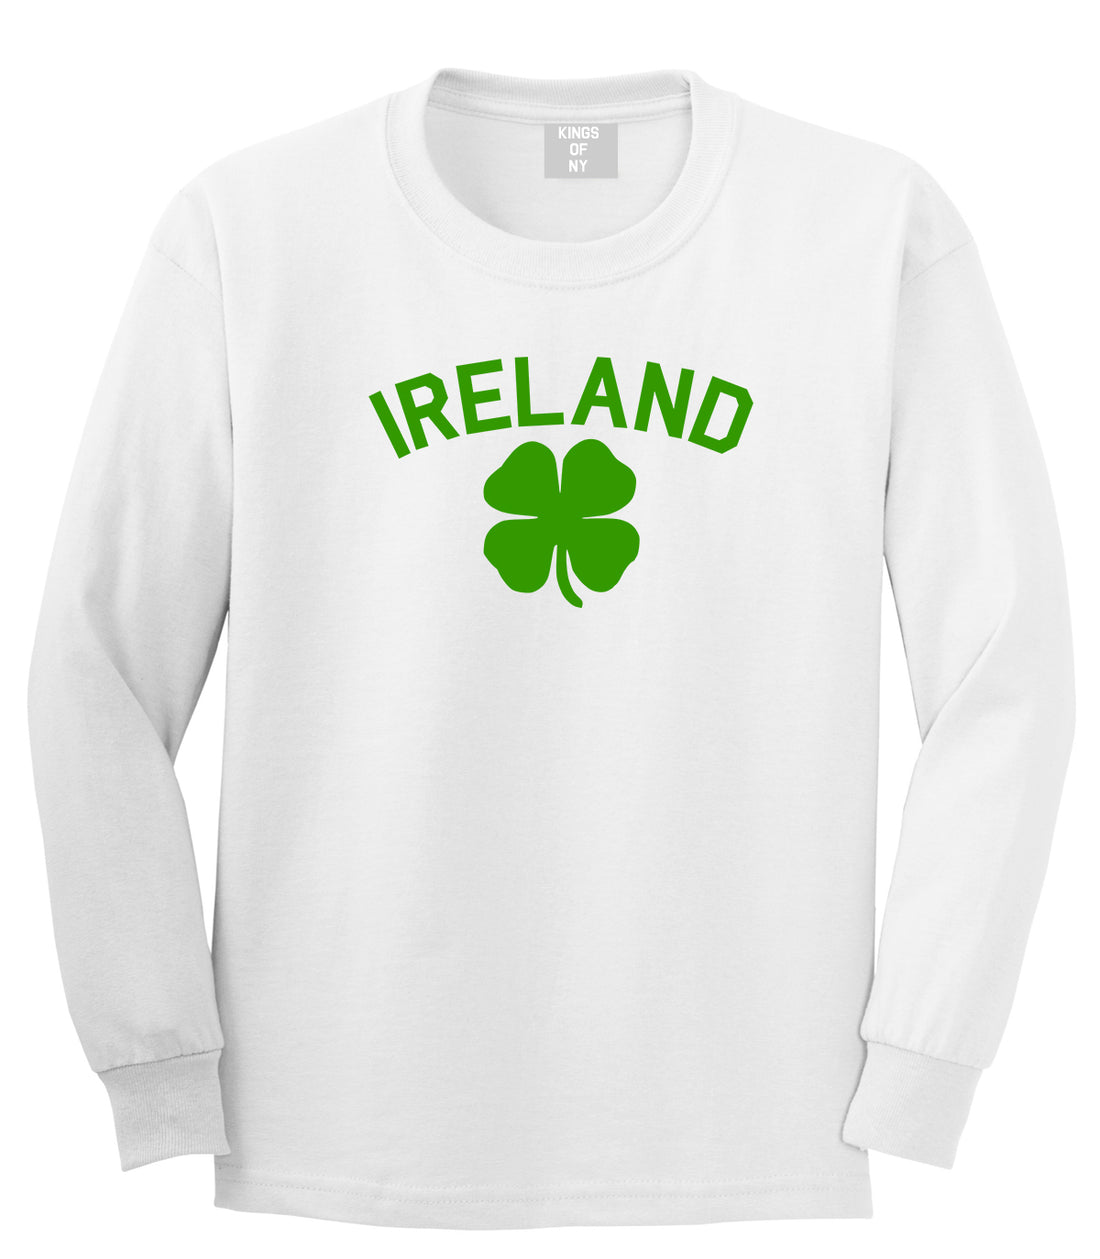 Ireland Shamrock St Paddys Day Mens Long Sleeve T-Shirt White